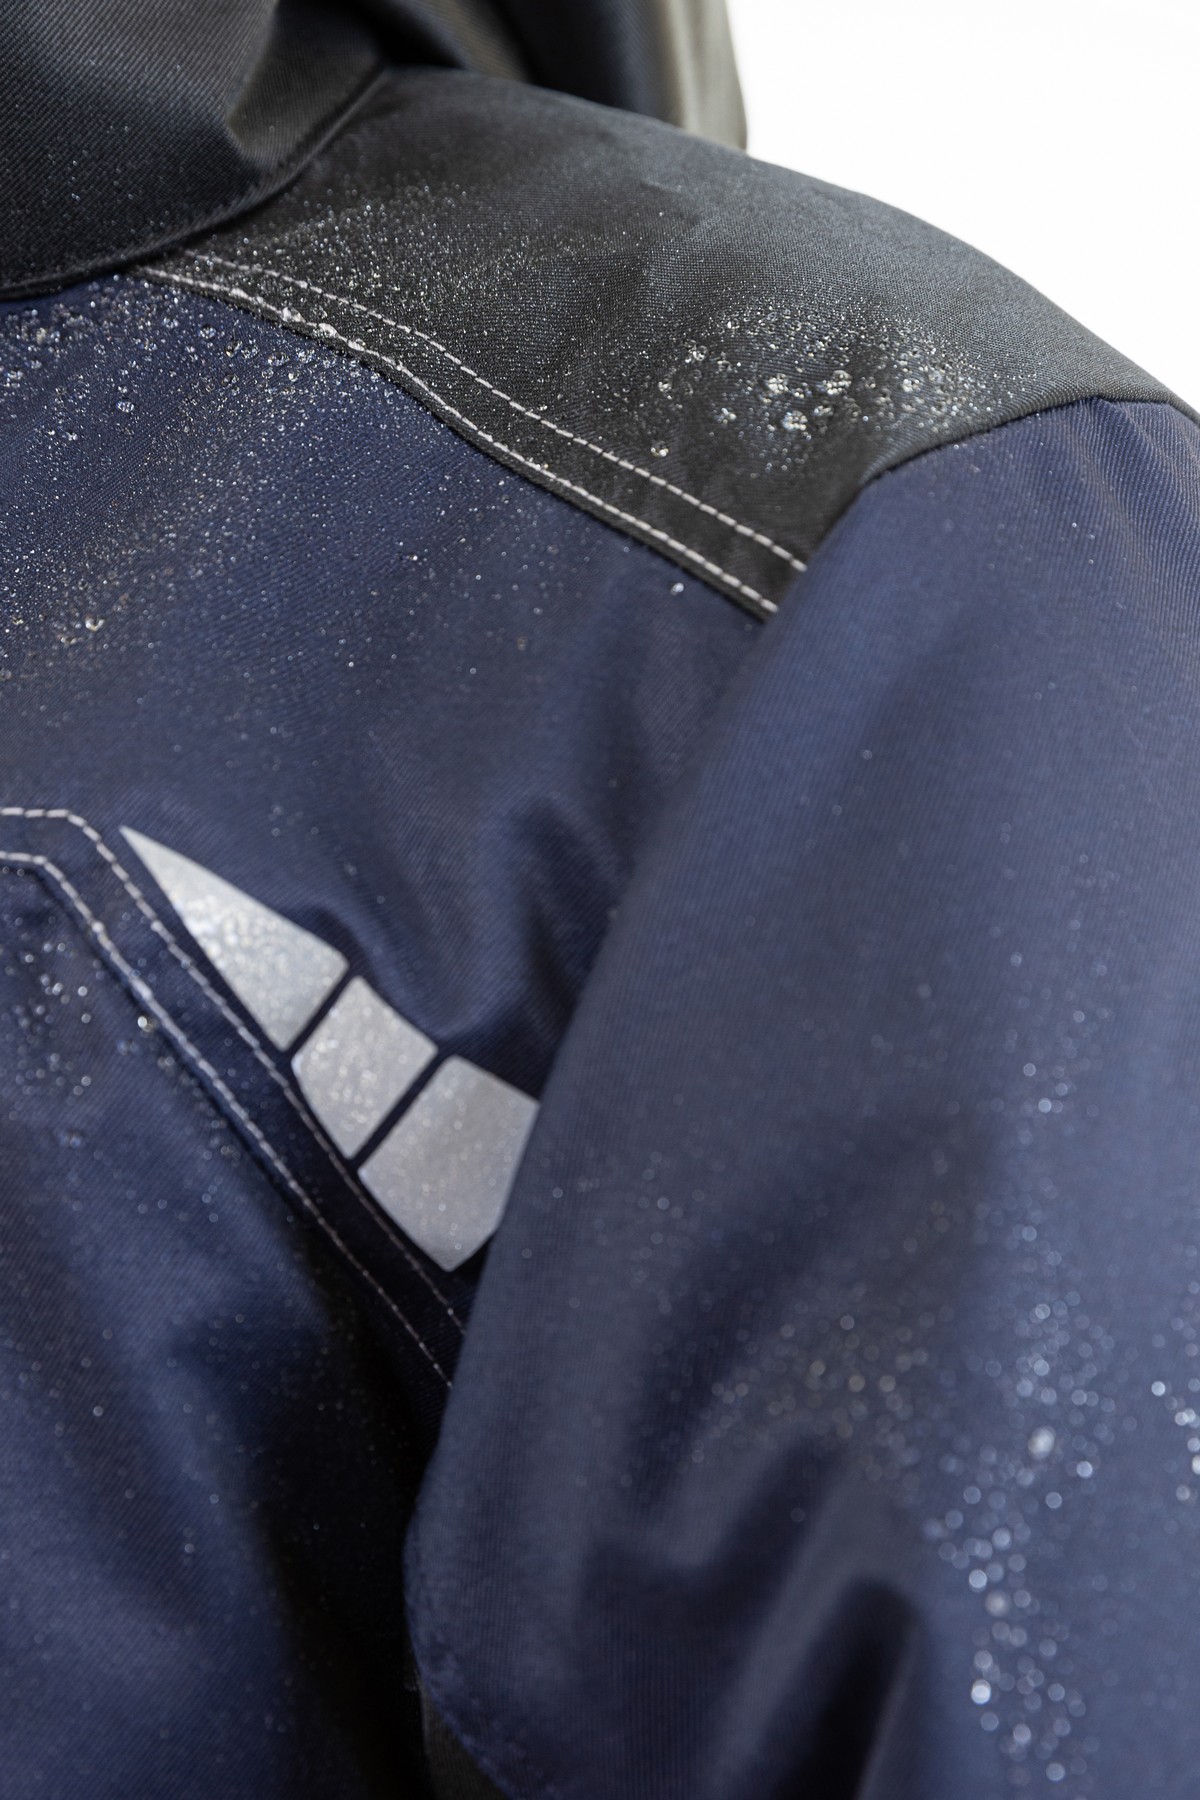 Куртка мужская зимняя BRODEKS KW 206, синий/черный